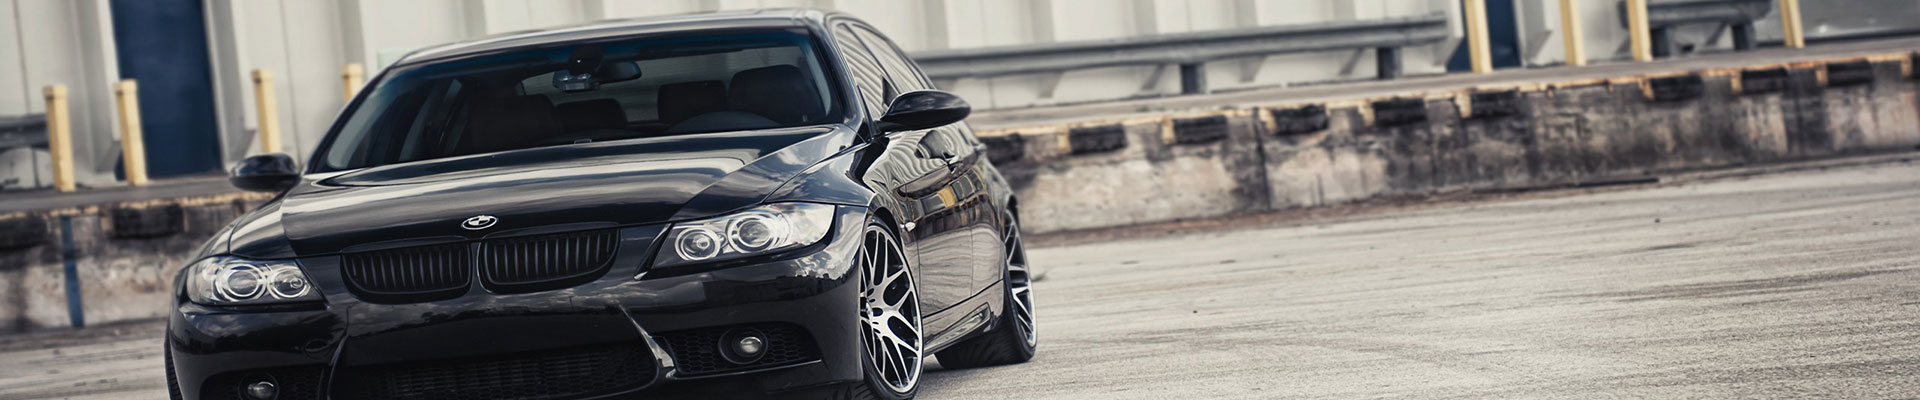 autoverzekering BMW 3 series